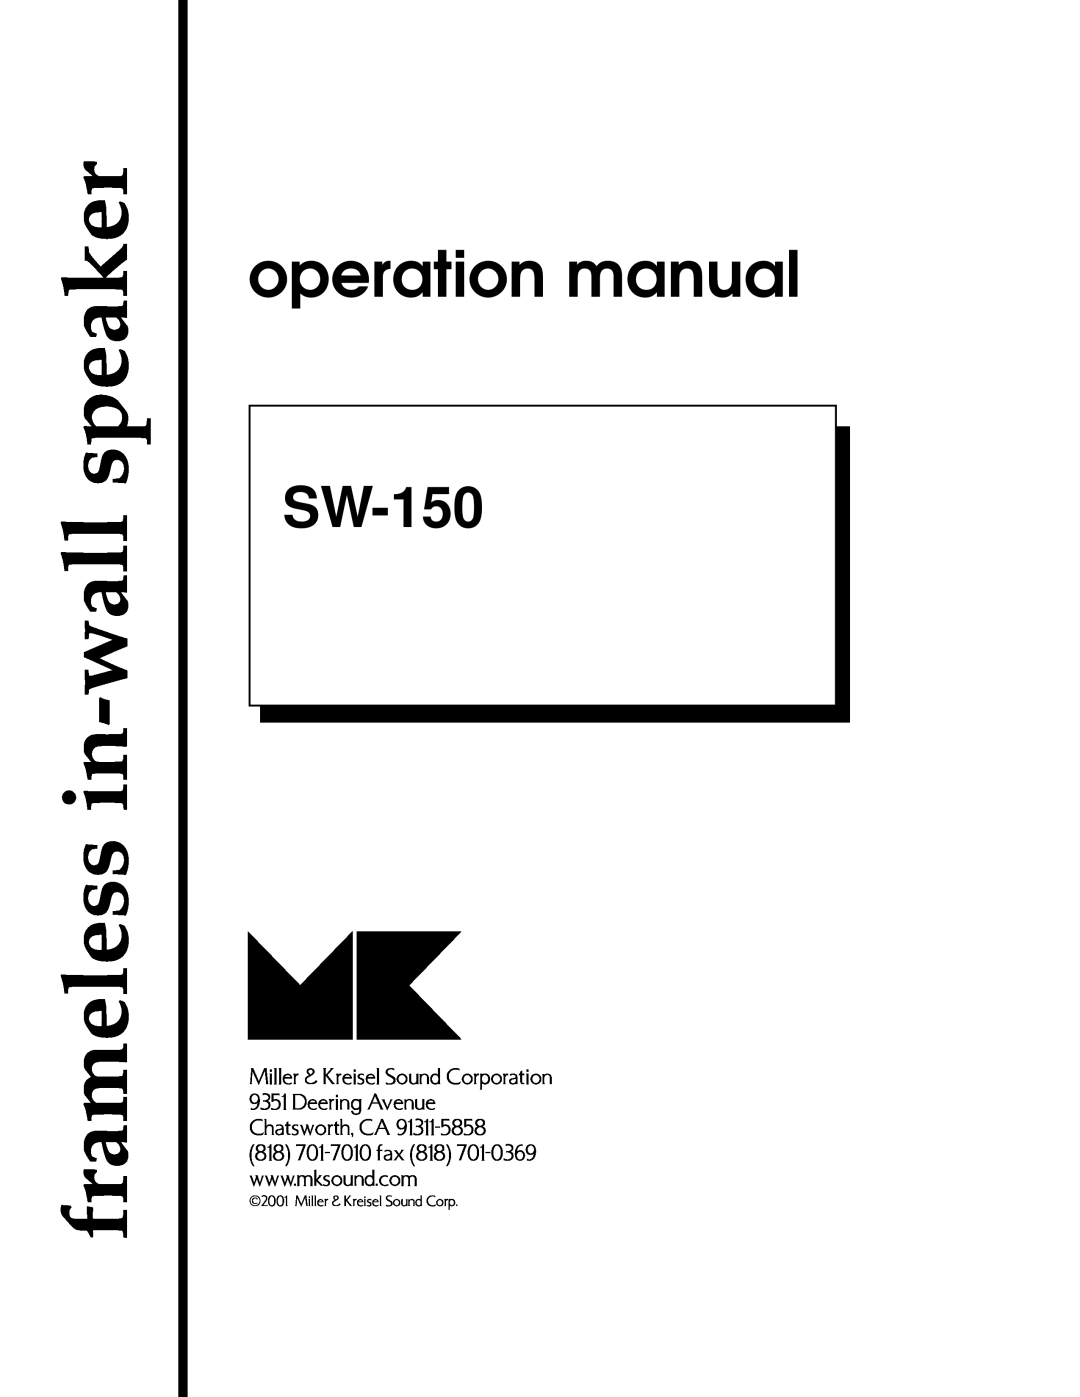 MK Sound SW-150 operation manual frameless in-wallspeaker, Miller & Kreisel Sound Corporation 